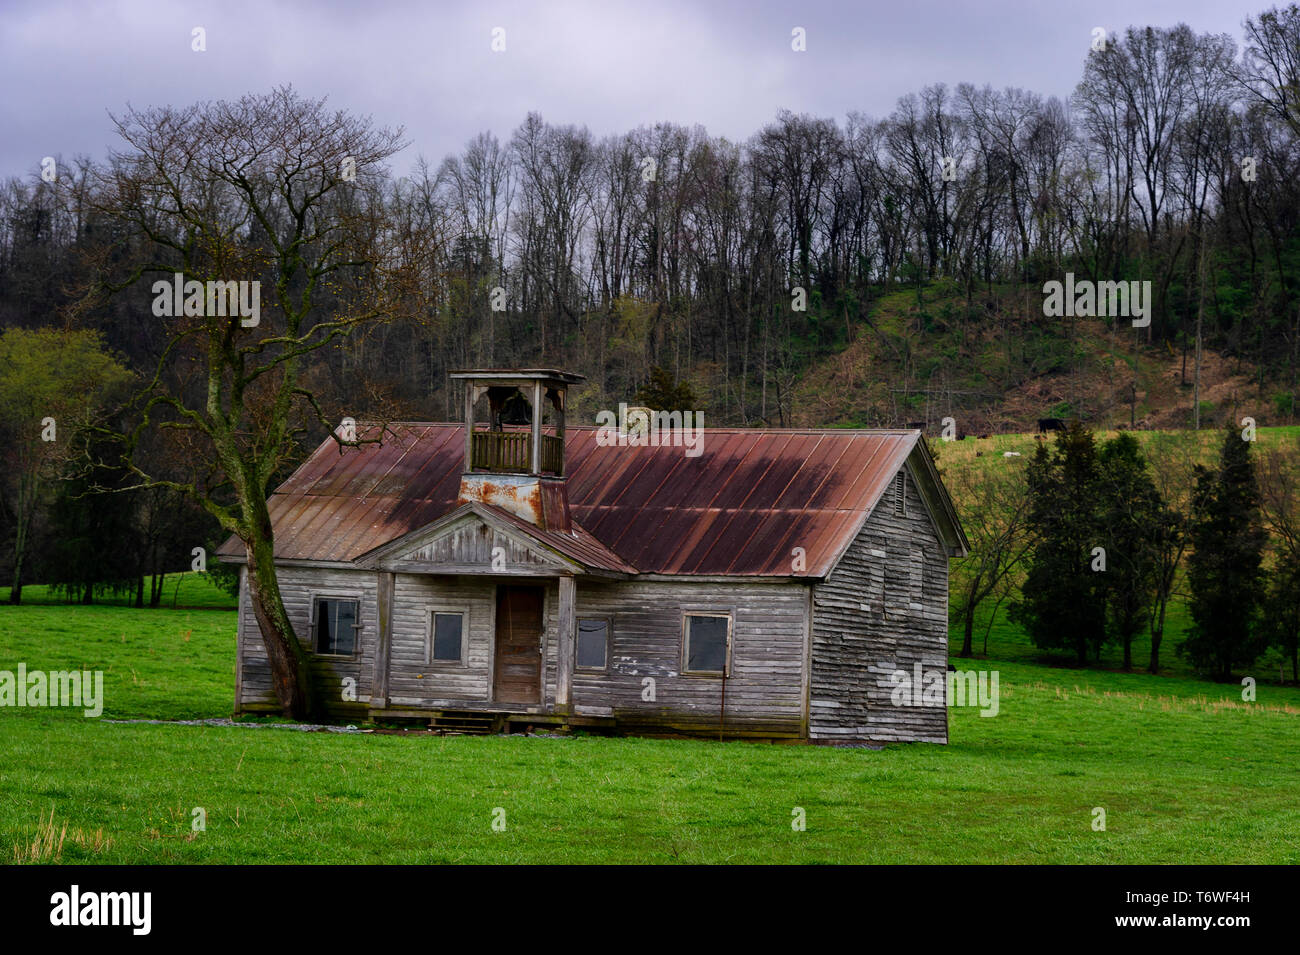 Verfallende auf die Elemente, eine alte Schule Haus sitzt auf einer Weide bei bewölktem Himmel mit misty Rain abgebrochener. Stockfoto